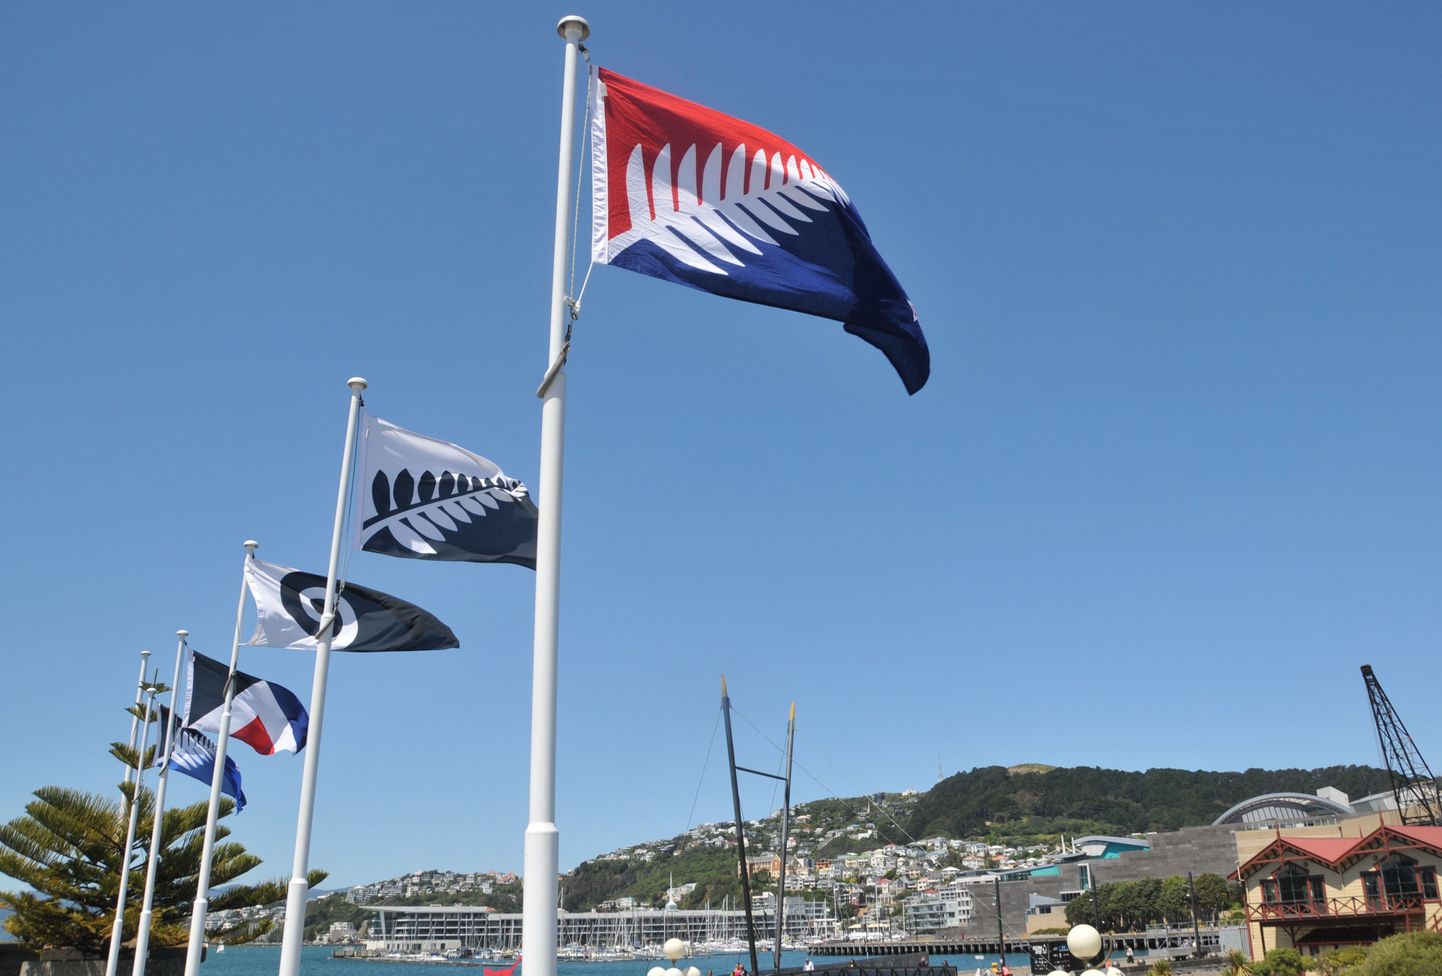 Жители Новой Зеландии началось голосование в ходе которого новозеландцы выберут новый флаг. На фото разные варианты нового флага.